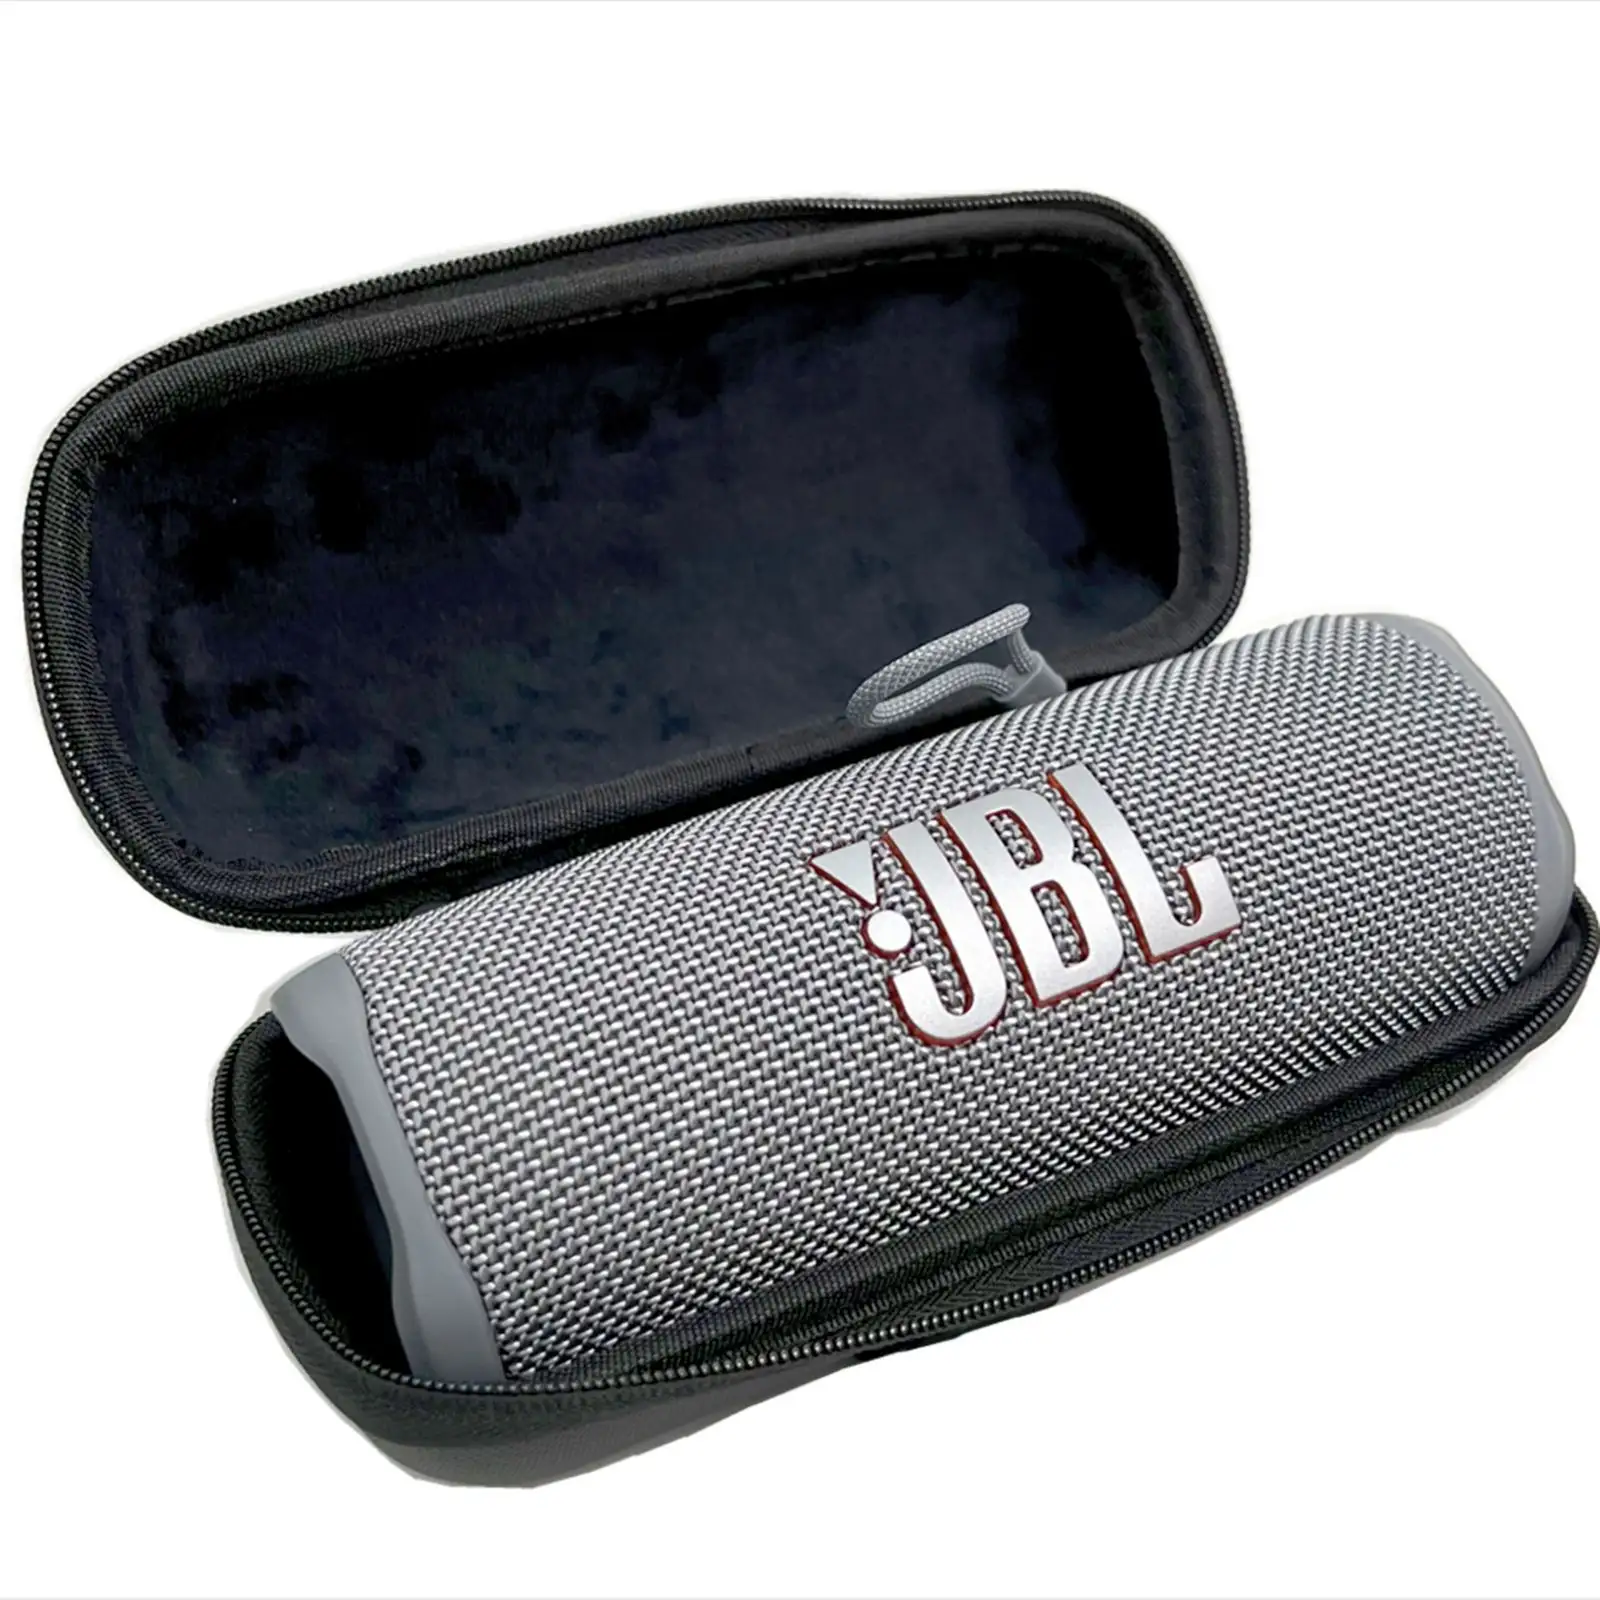 Ucuz fiyat Bluetooth ses saklama çantası evrensel Model EVA organizatör taşınabilir kulaklık koruyucu kılıf